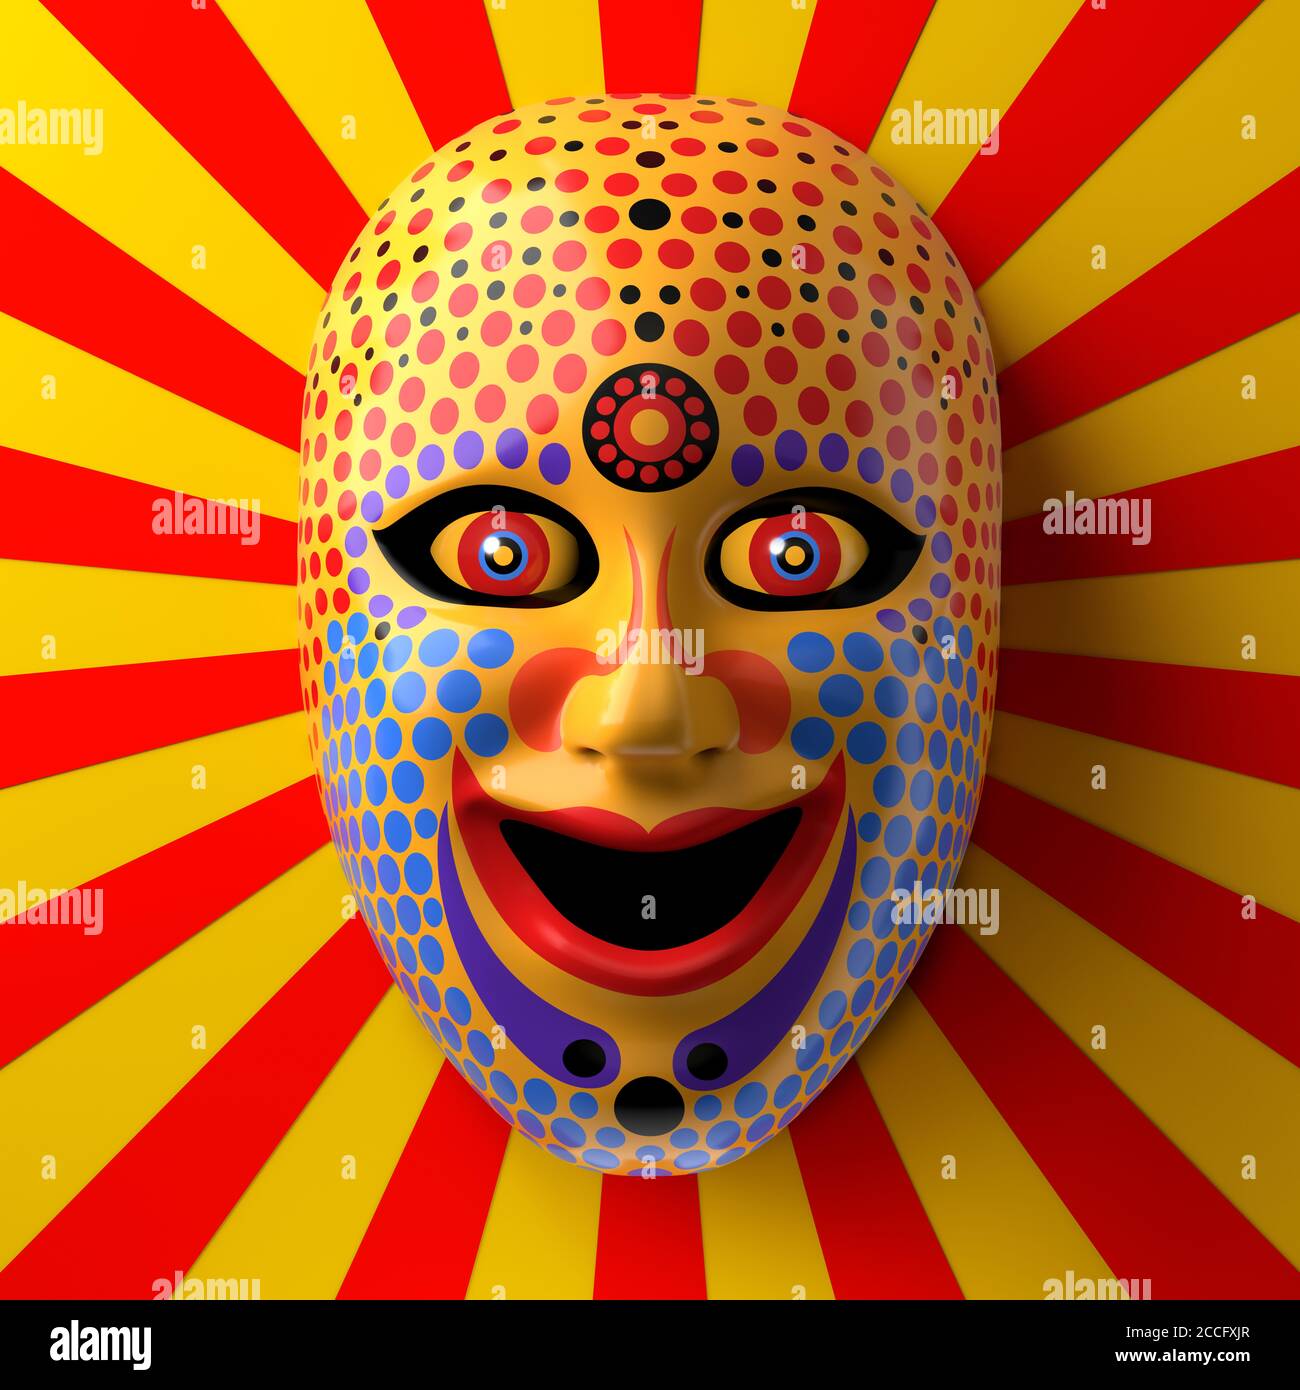 Asiatische Theatermaske mit farbigen Ornamenten und Punkten gegen Rot Und gelbe Strahlen Hintergrund Stockfoto